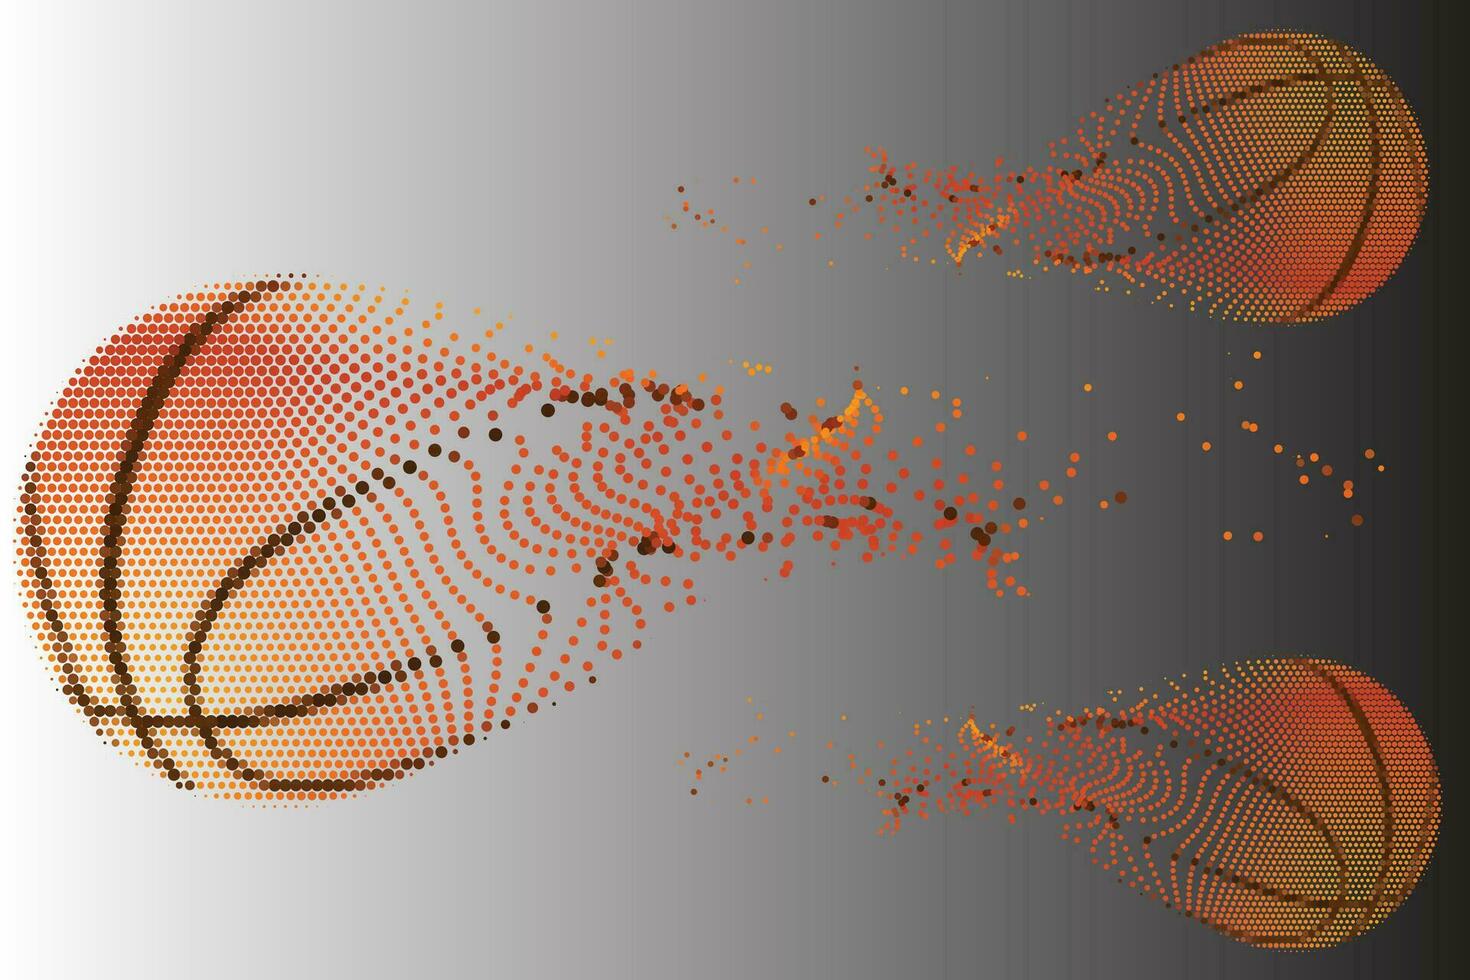 en vektor illustration av en basketboll turnering begrepp. eps 10. fil innehåller OH-film.